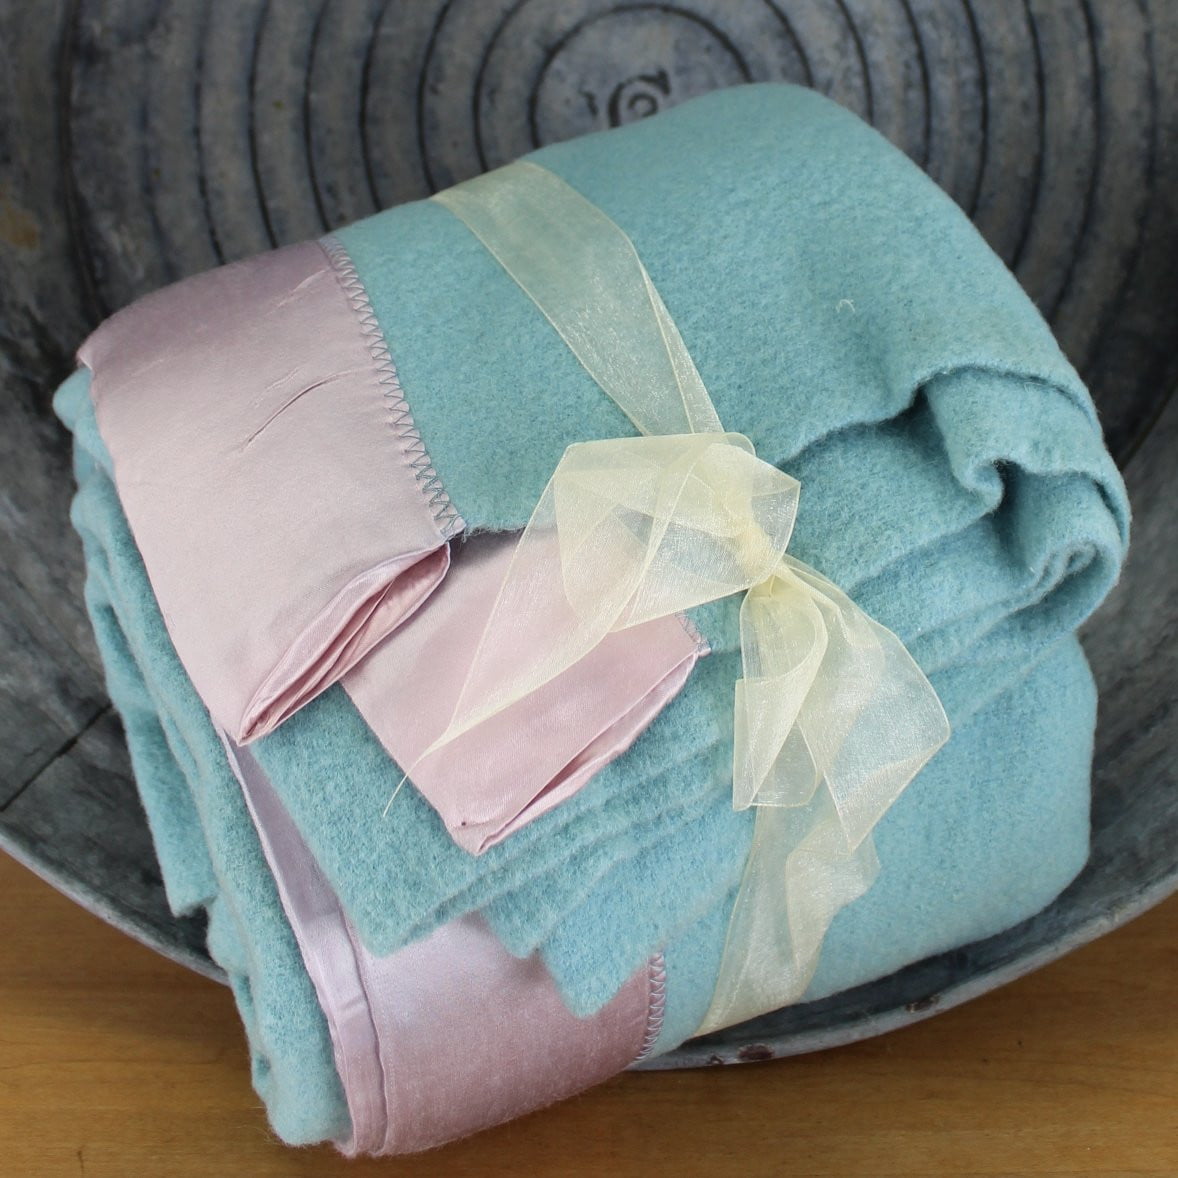 Vintage Unbranded Wool Blanket - 1950's Sky Blue Wide Satin Binding - 69" X 83"